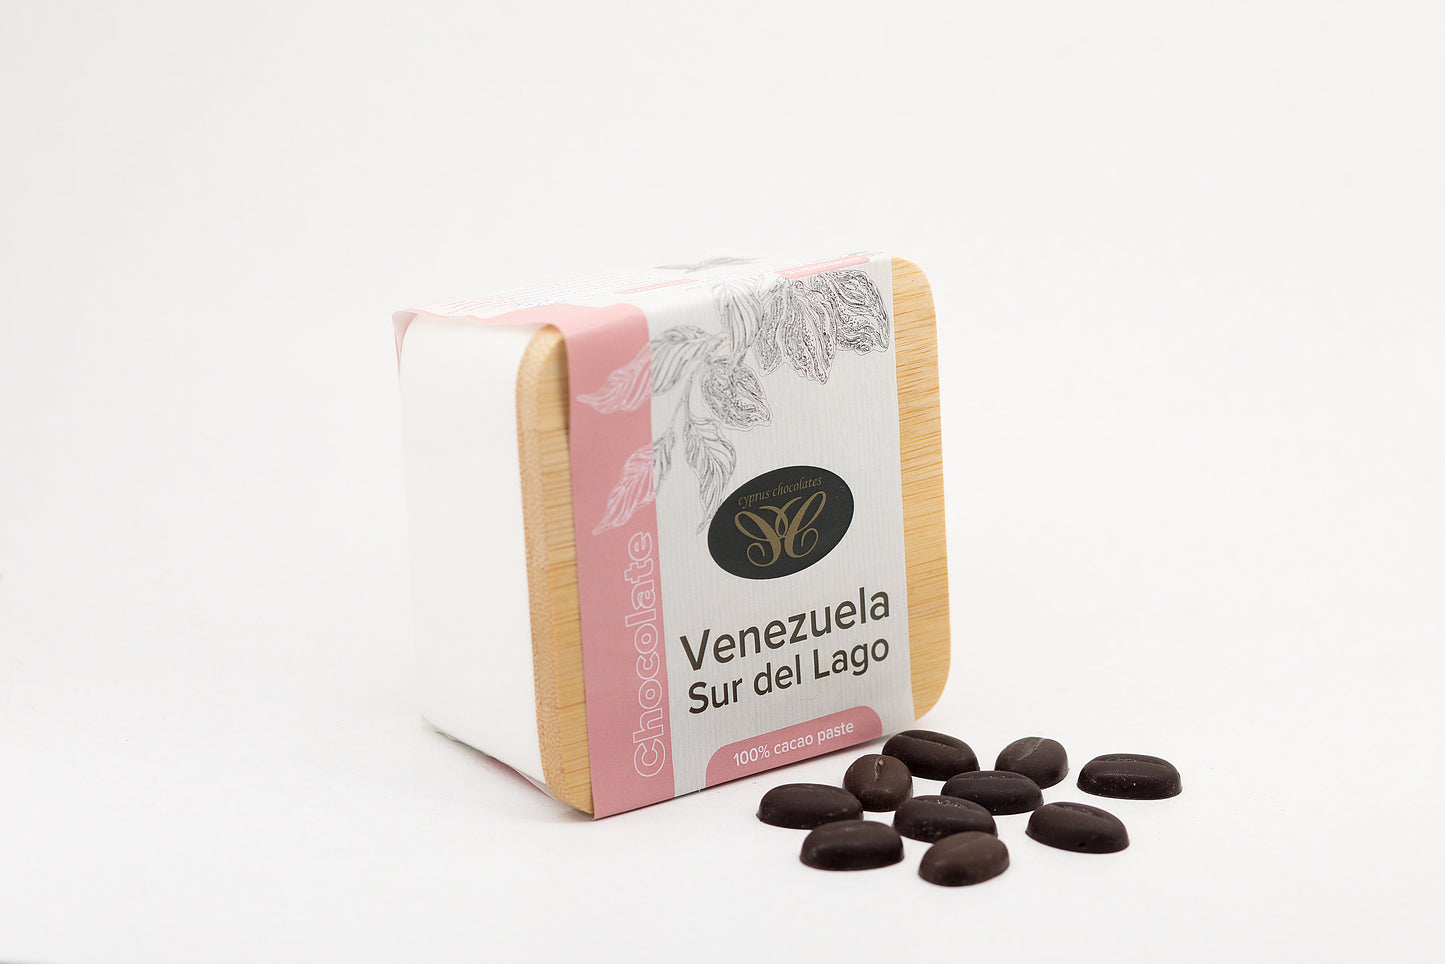 Venezuela Sur del Lago 100% Cacao Paste